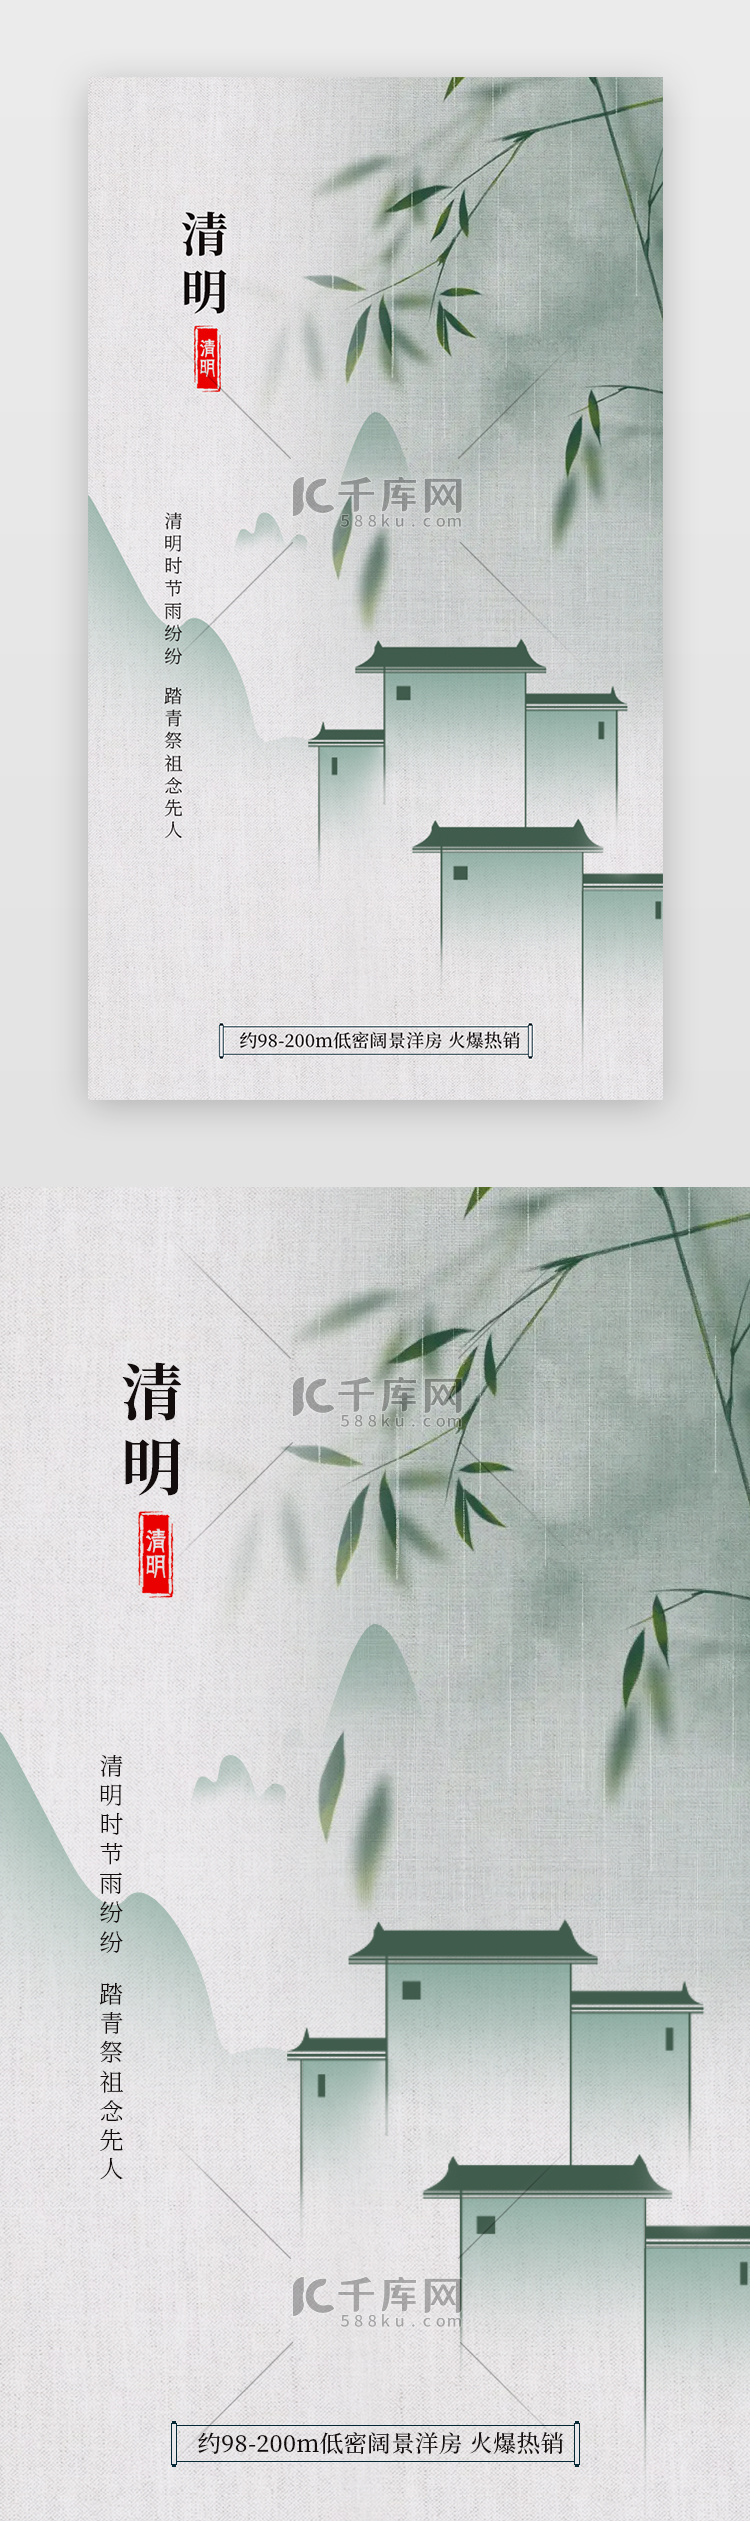 清明节、地产闪屏、海报中国风青色、绿色房屋、竹子